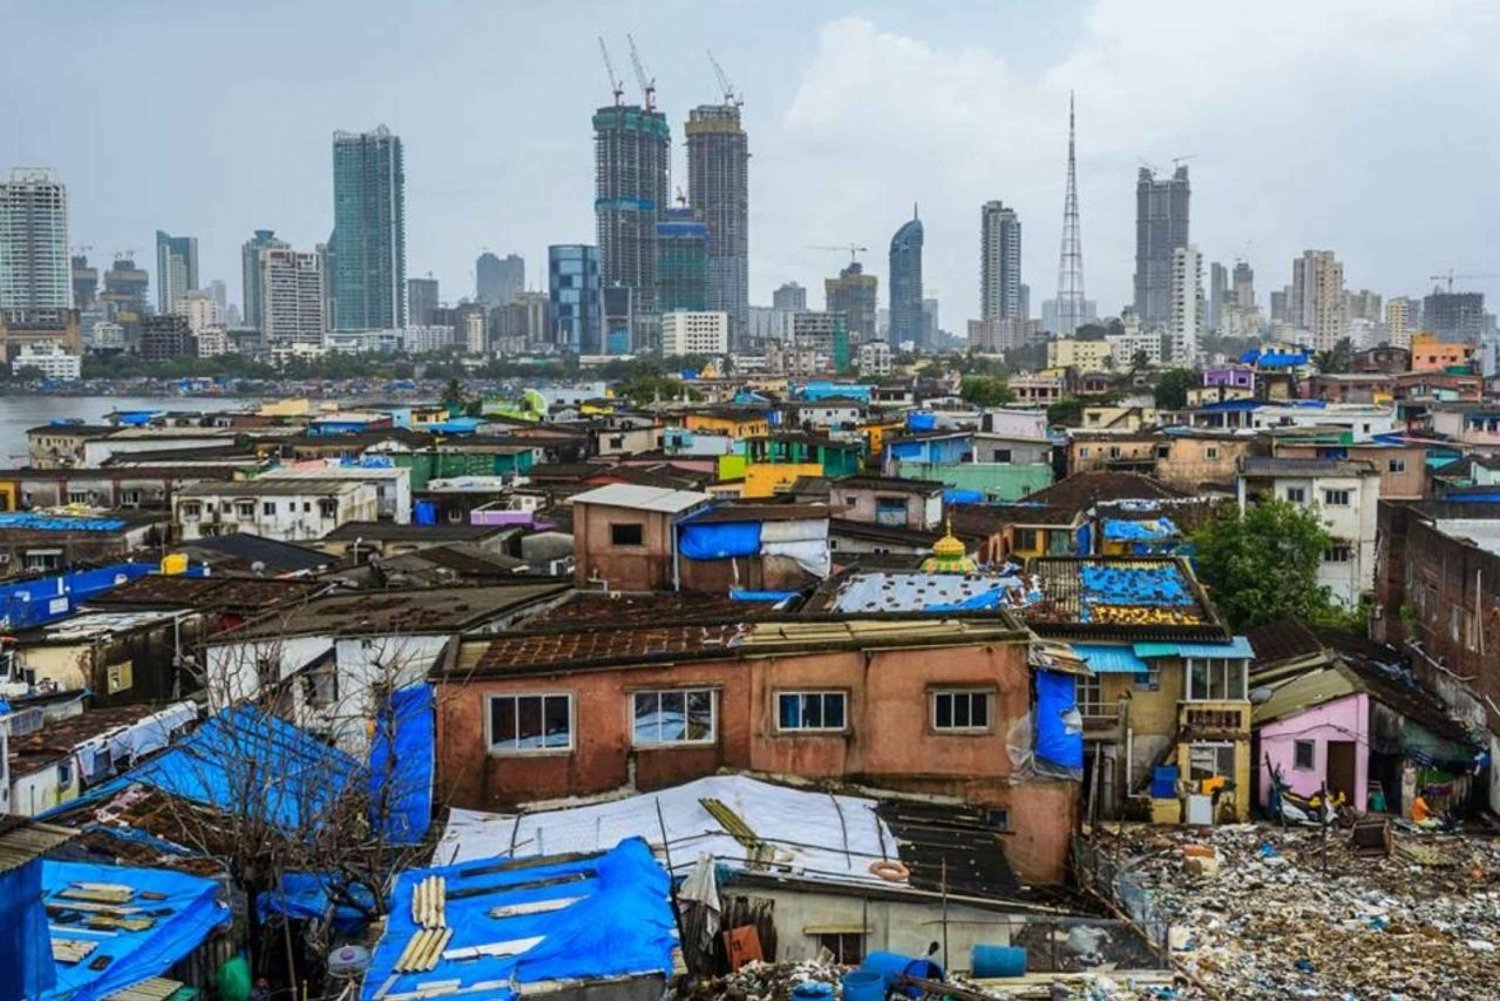 Caminhada na favela de Dharavi, em Mumbai